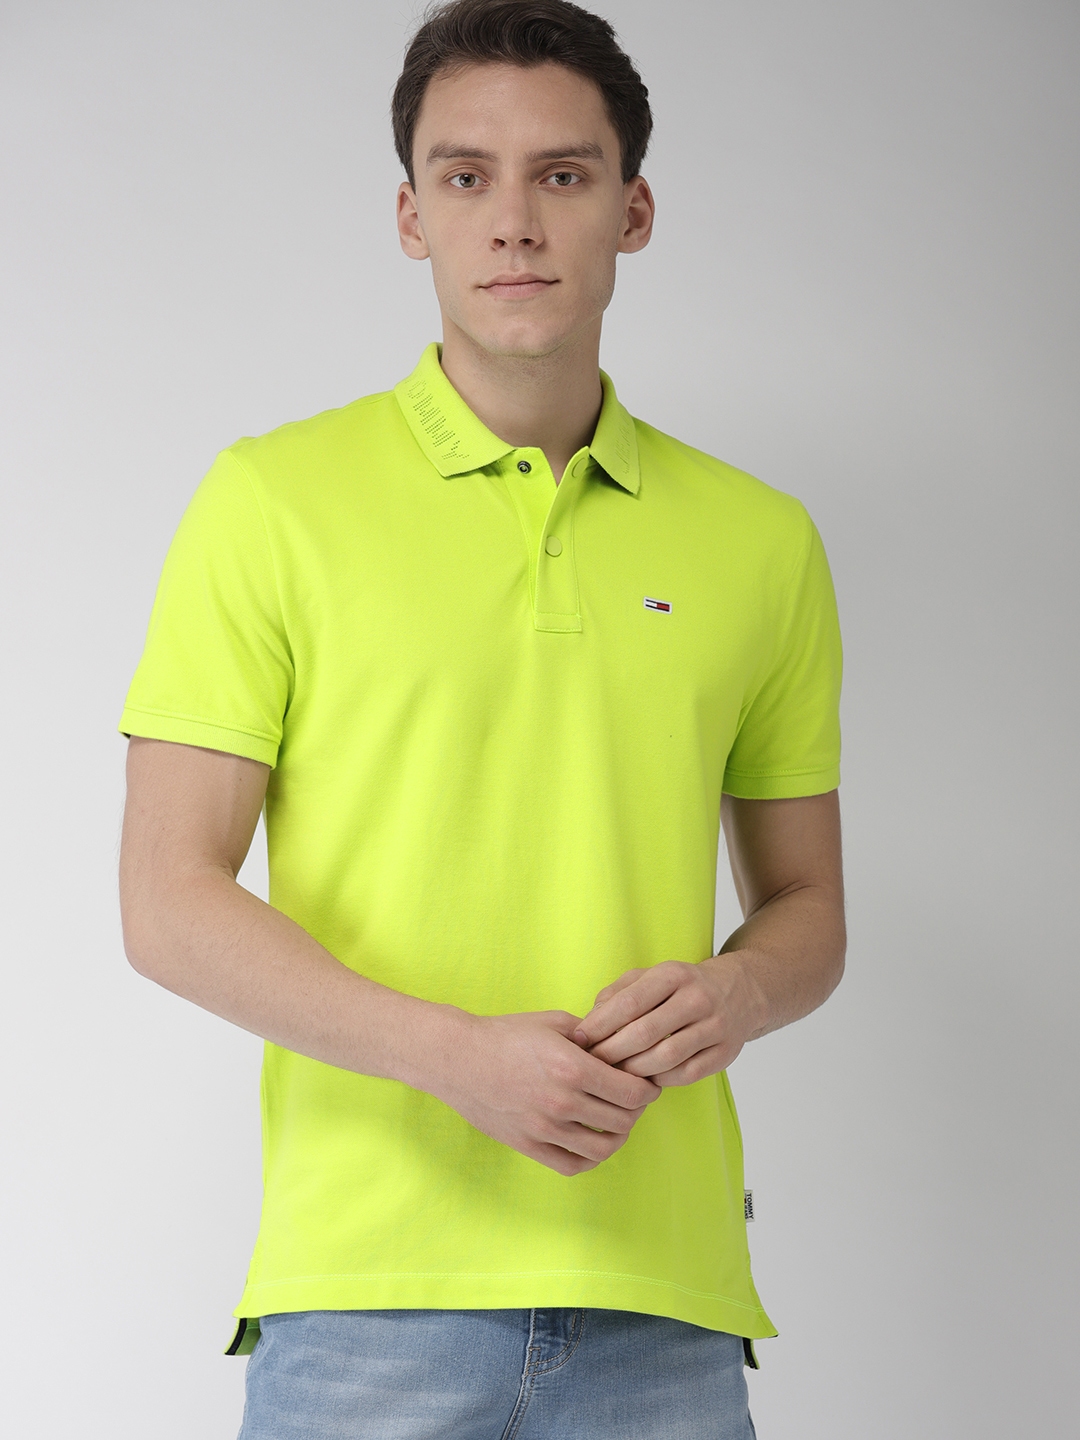 Lime мужской магазины. Зеленая рубашка Lime. Lime рубашка желтая. Lime man.